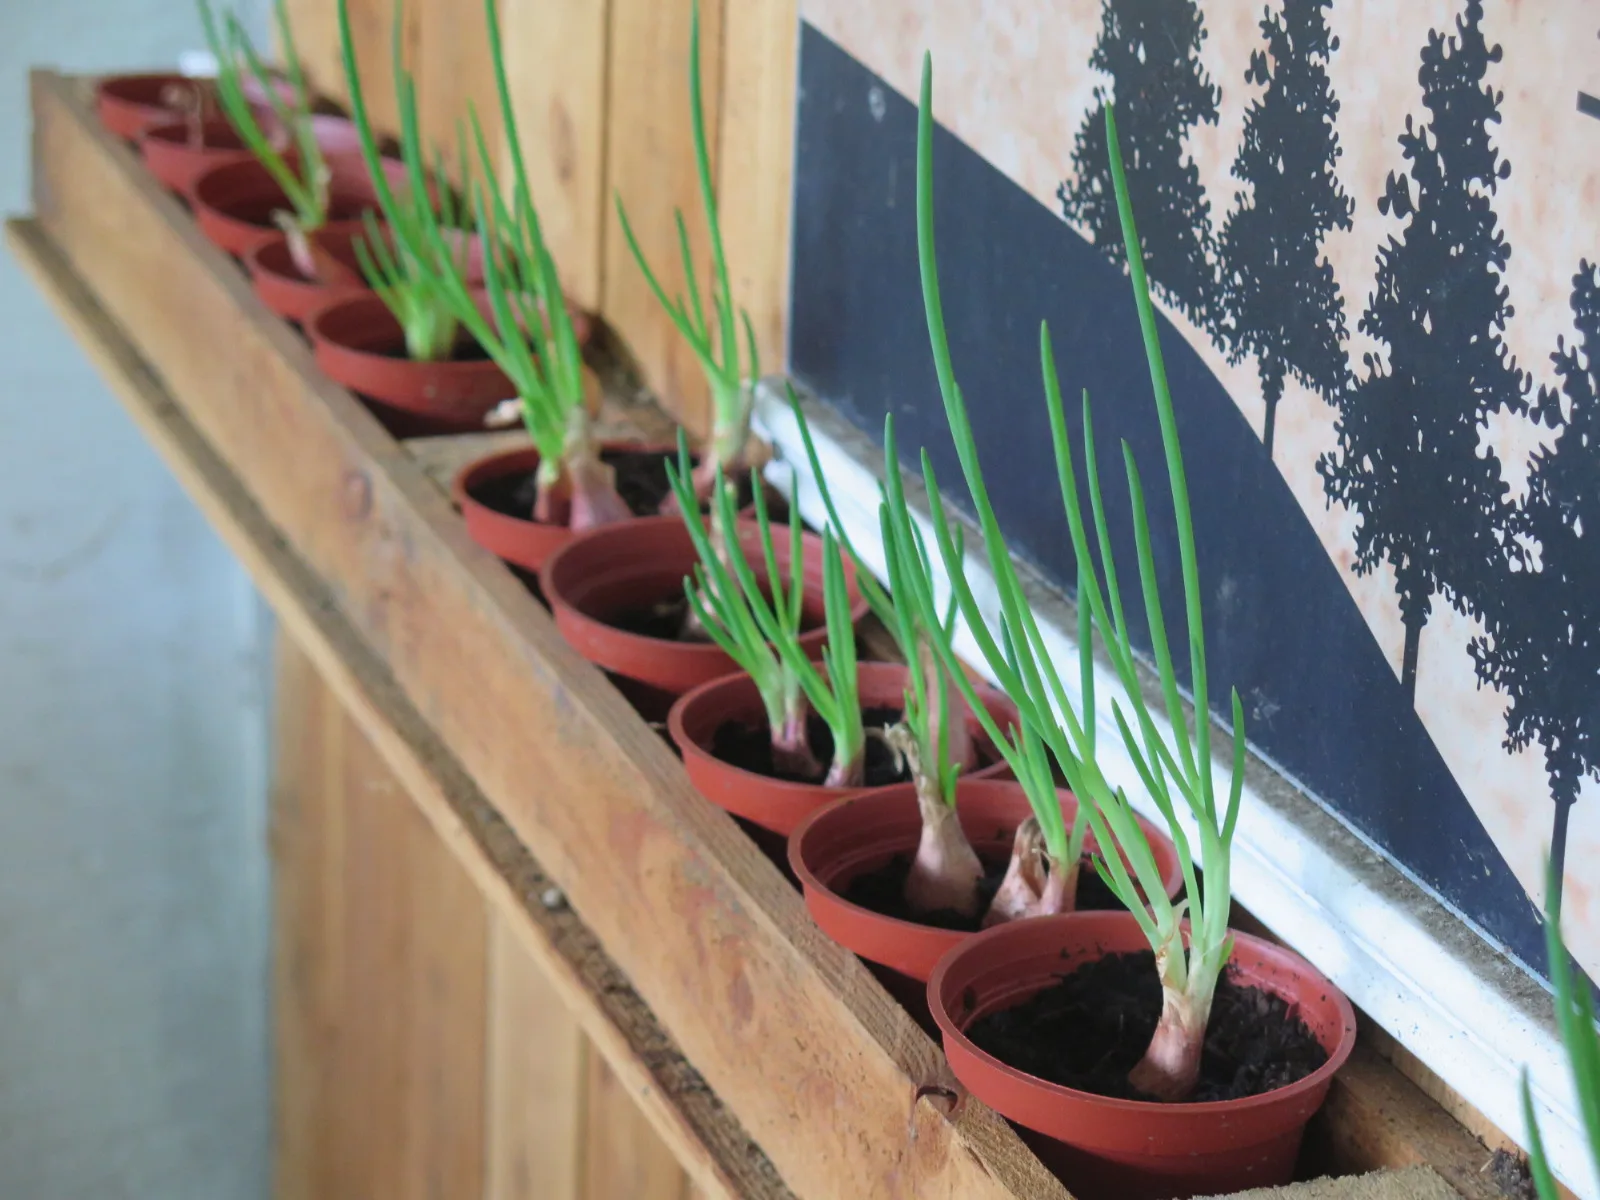 菁桐社區農村再生 設置「綠色奇機療癒蔬菜園」